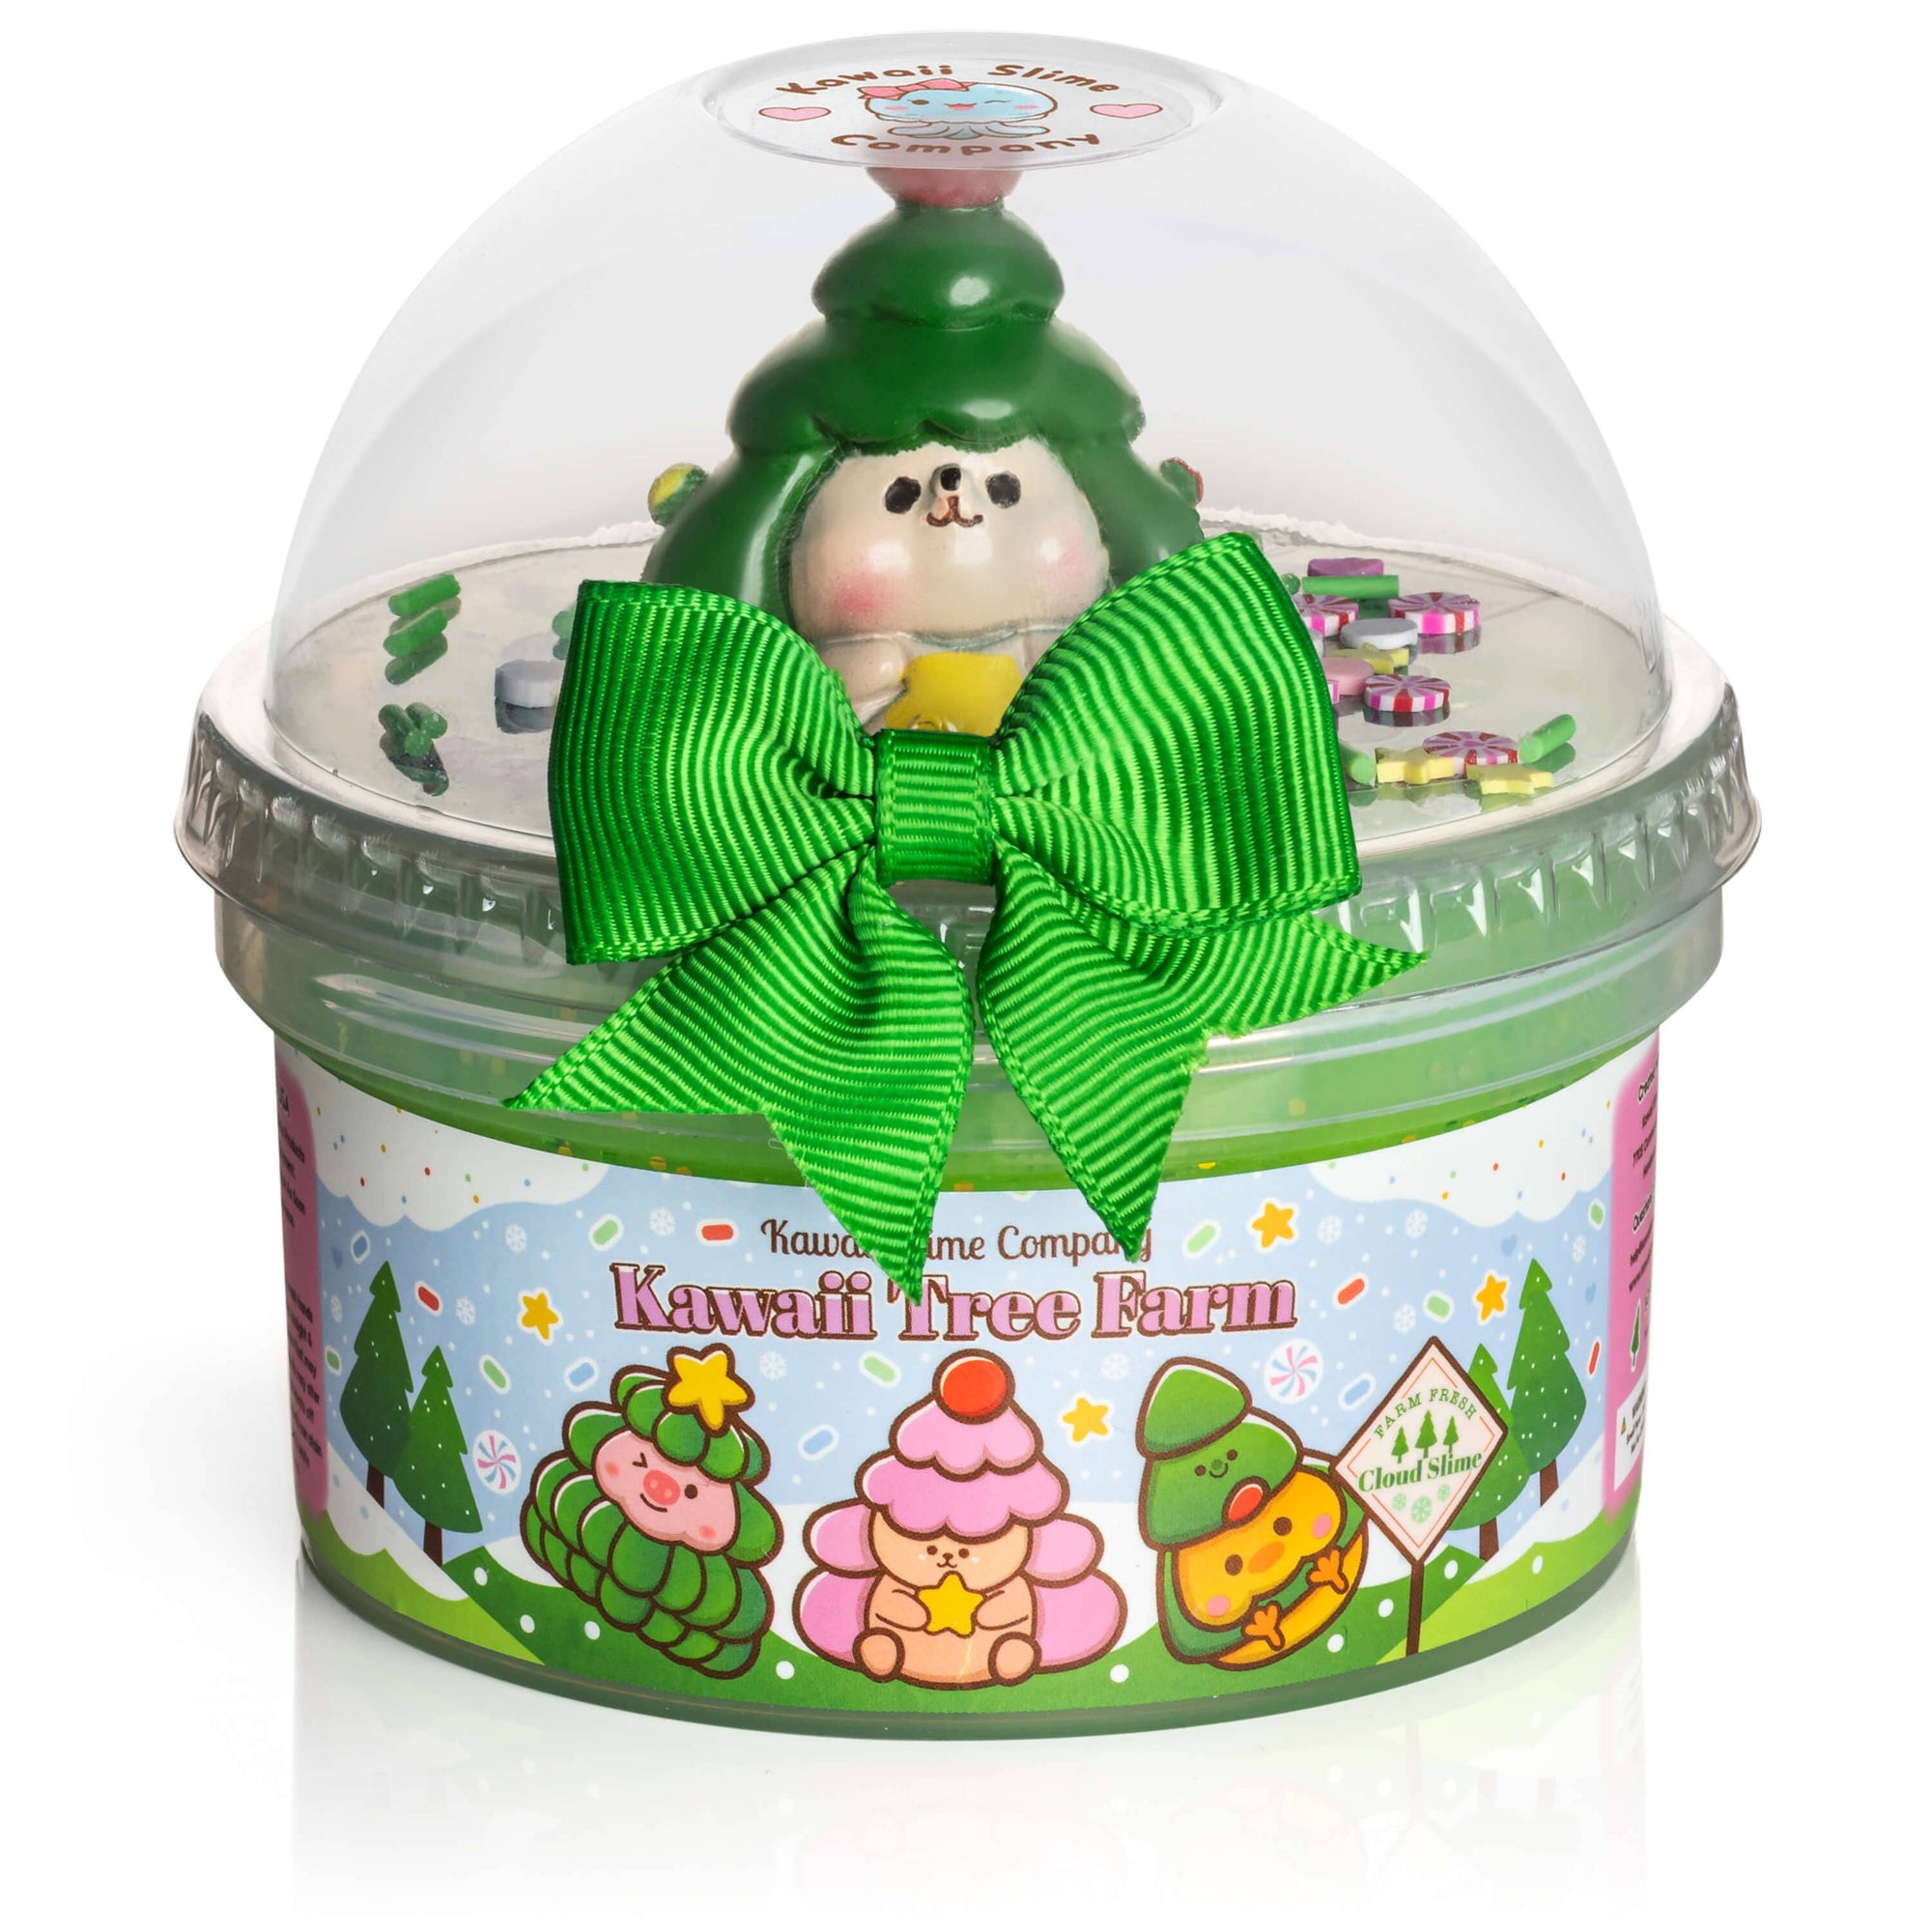 Kawaii Tree Farm Cloud Slime-Kawaii Slime Company-Yellow Springs Toy Company